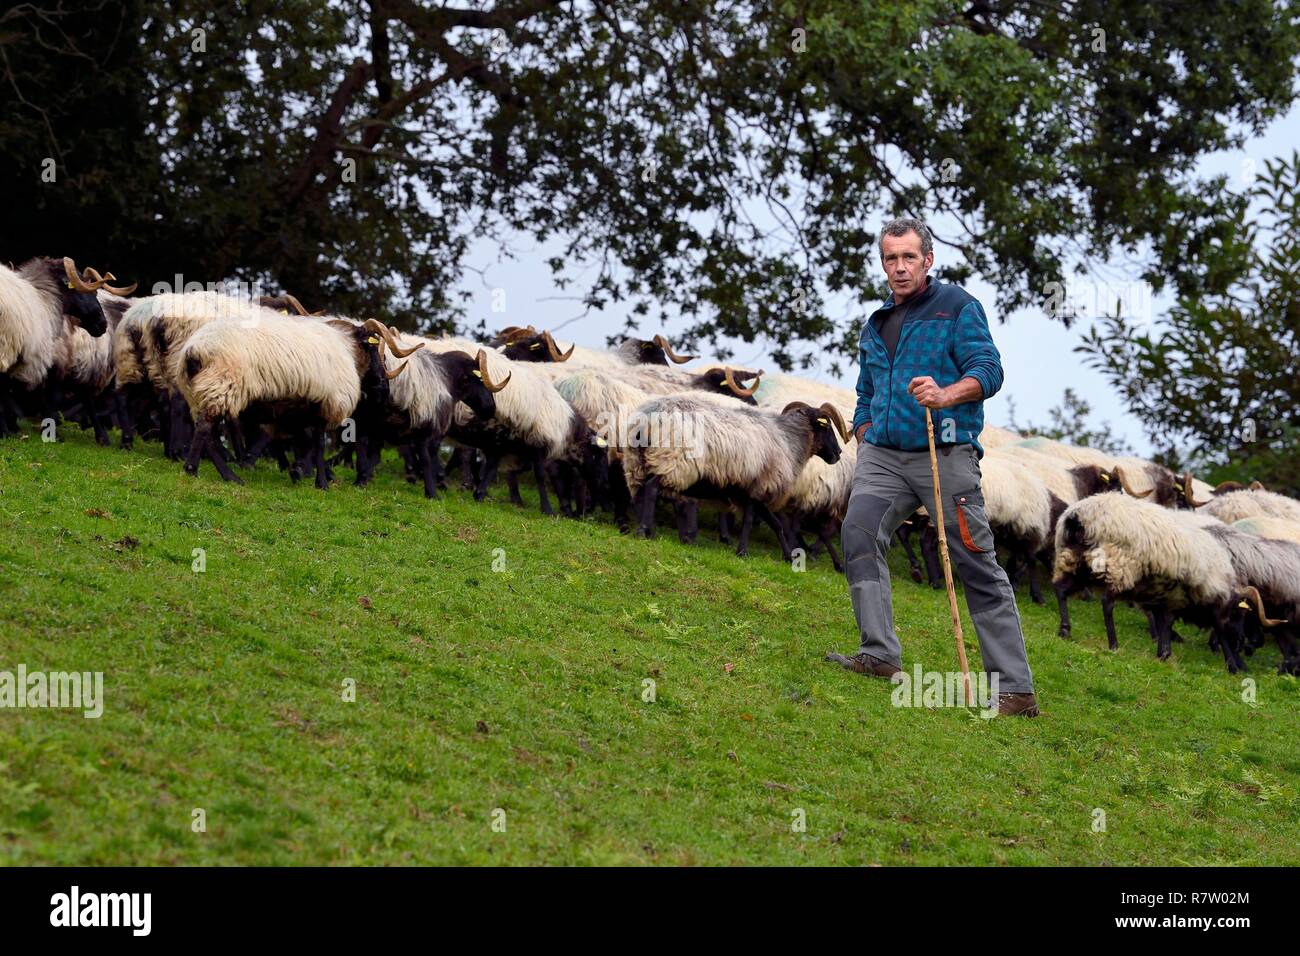 France, Pyrénées Atlantiques, Pays Basque, vallée des Aldudes, d'Urepel, la Manech tête noire eleveuse de moutons Jean-Bernard Etchebarren Banque D'Images